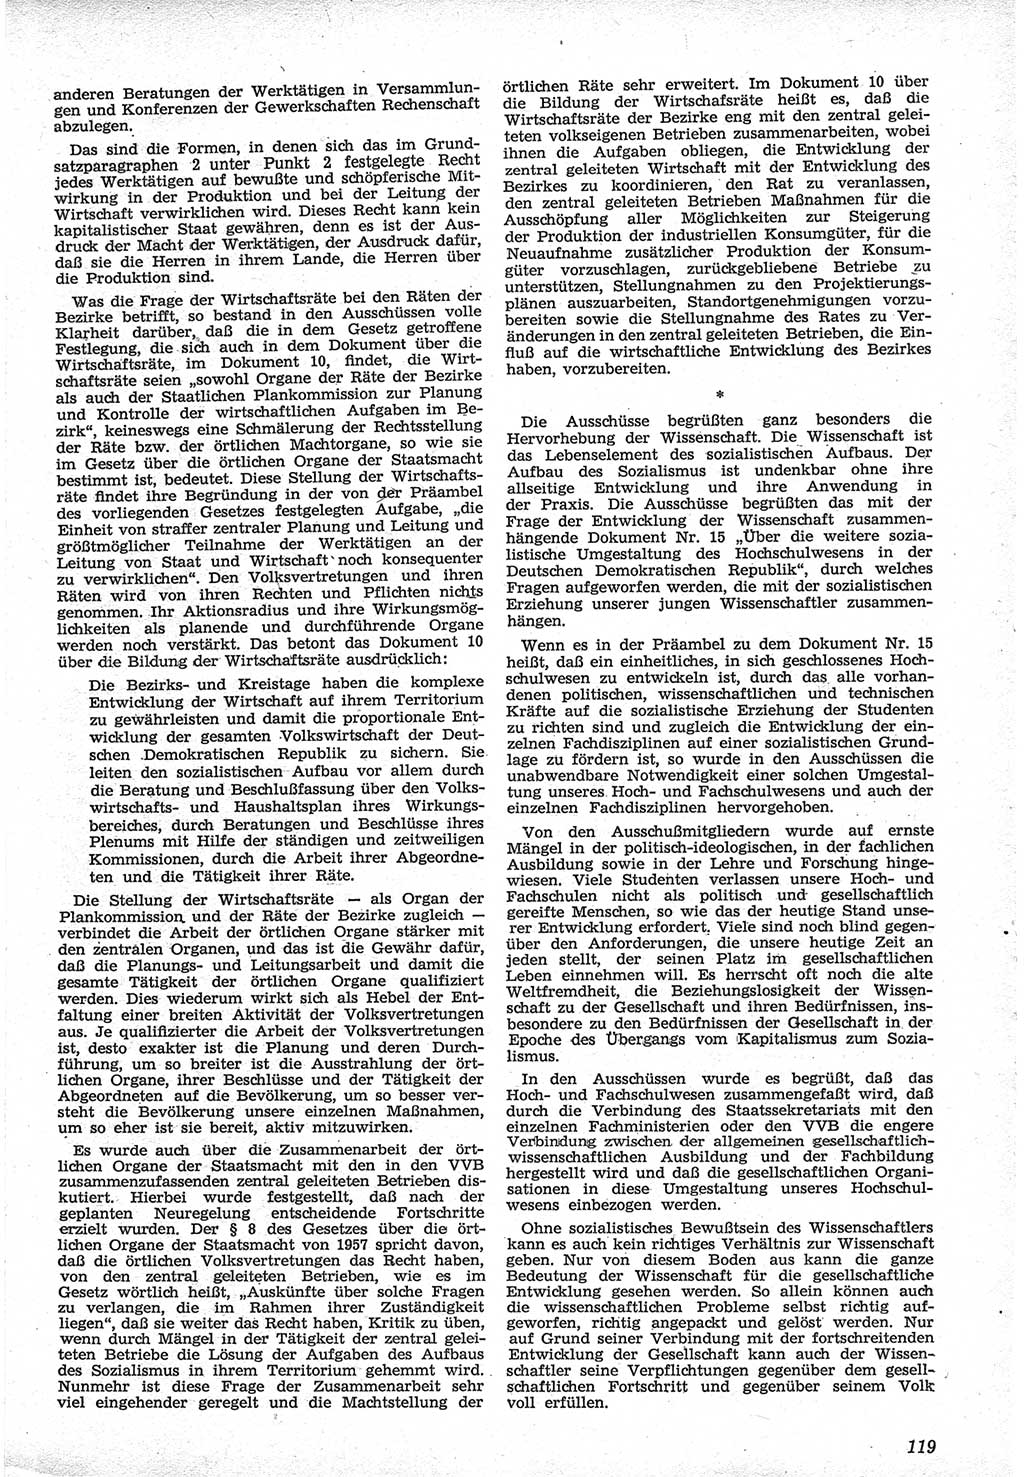 Neue Justiz (NJ), Zeitschrift für Recht und Rechtswissenschaft [Deutsche Demokratische Republik (DDR)], 12. Jahrgang 1958, Seite 119 (NJ DDR 1958, S. 119)